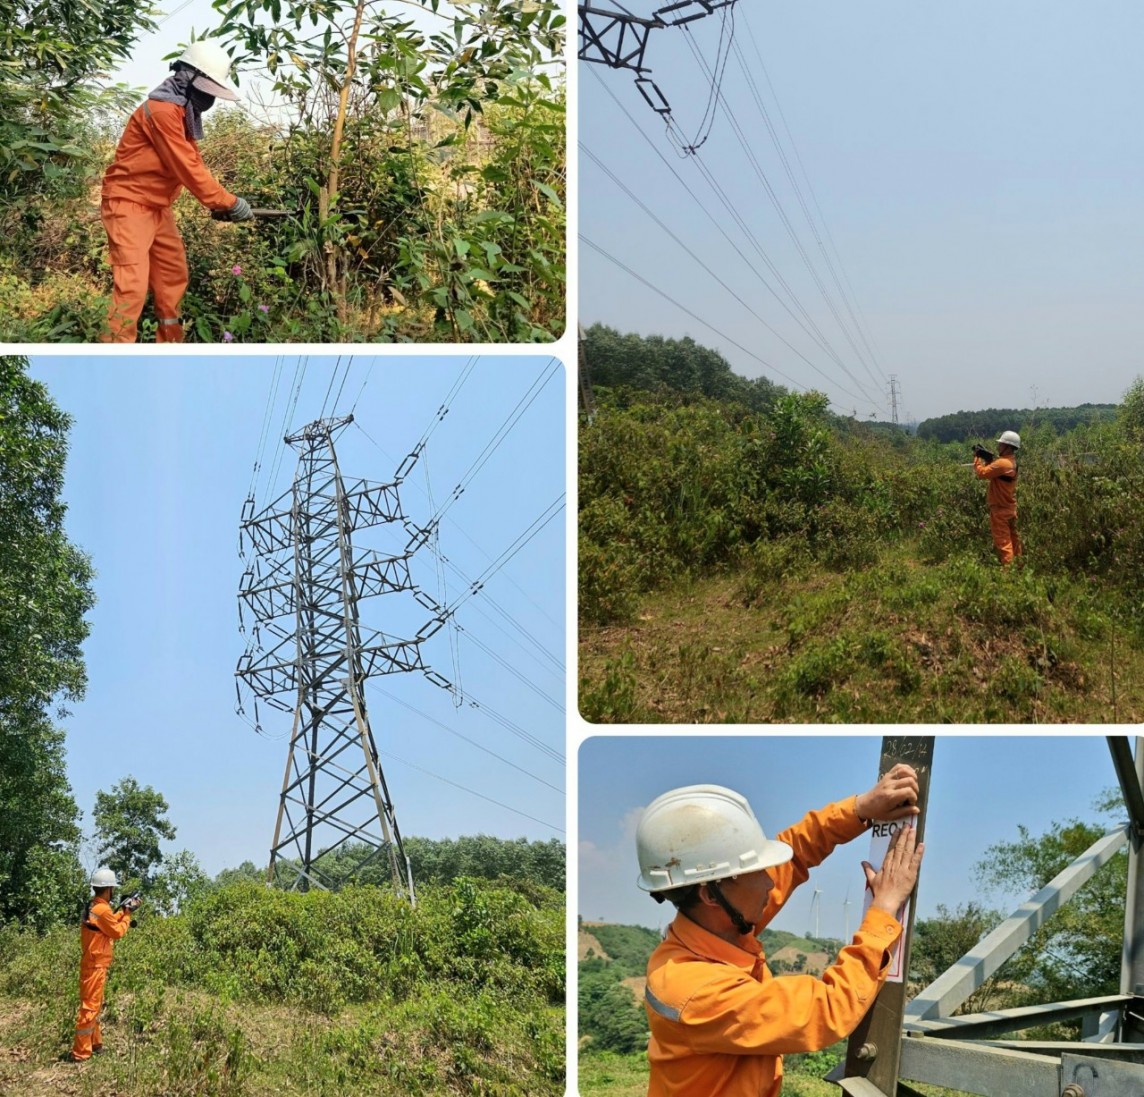 Quảng Trị: Theo chân những người thợ điện trong nắng gắt miền Trung